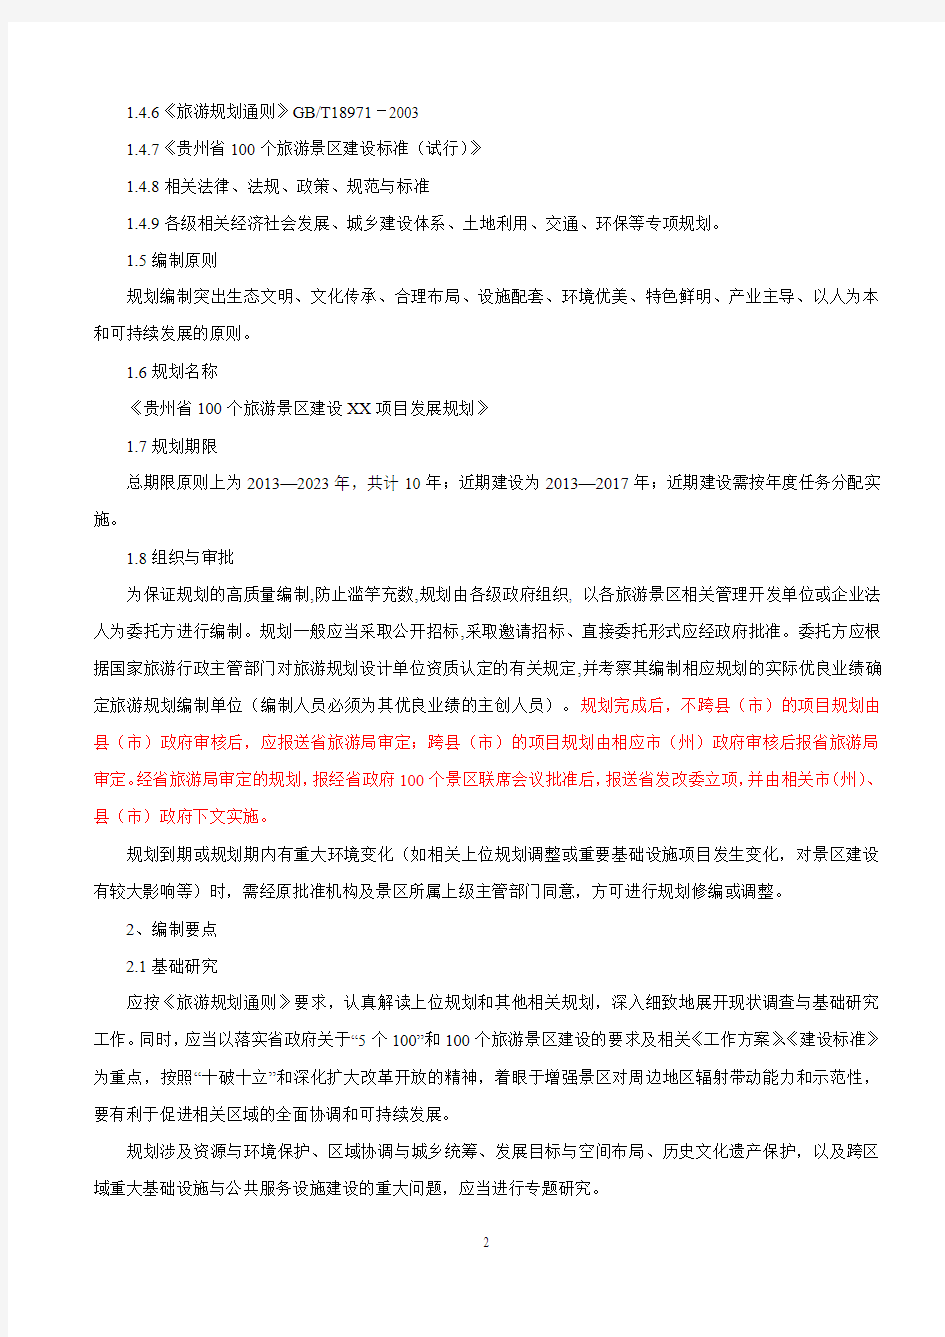 贵州省100个旅游景区发展建设规划导则修改(用)